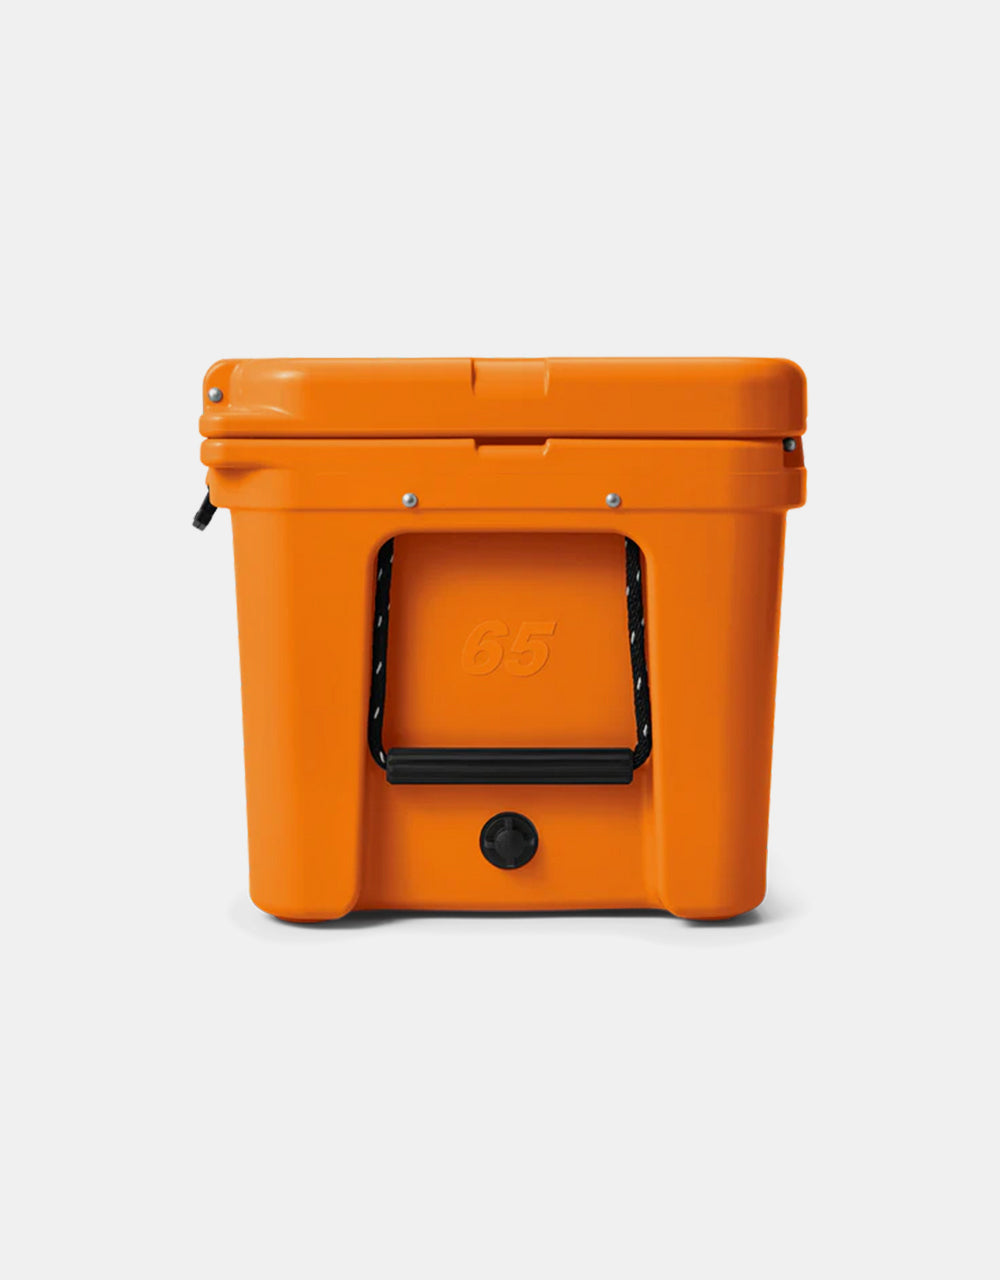 YETI Tundra® 65 Cool Box - King Crab Orange